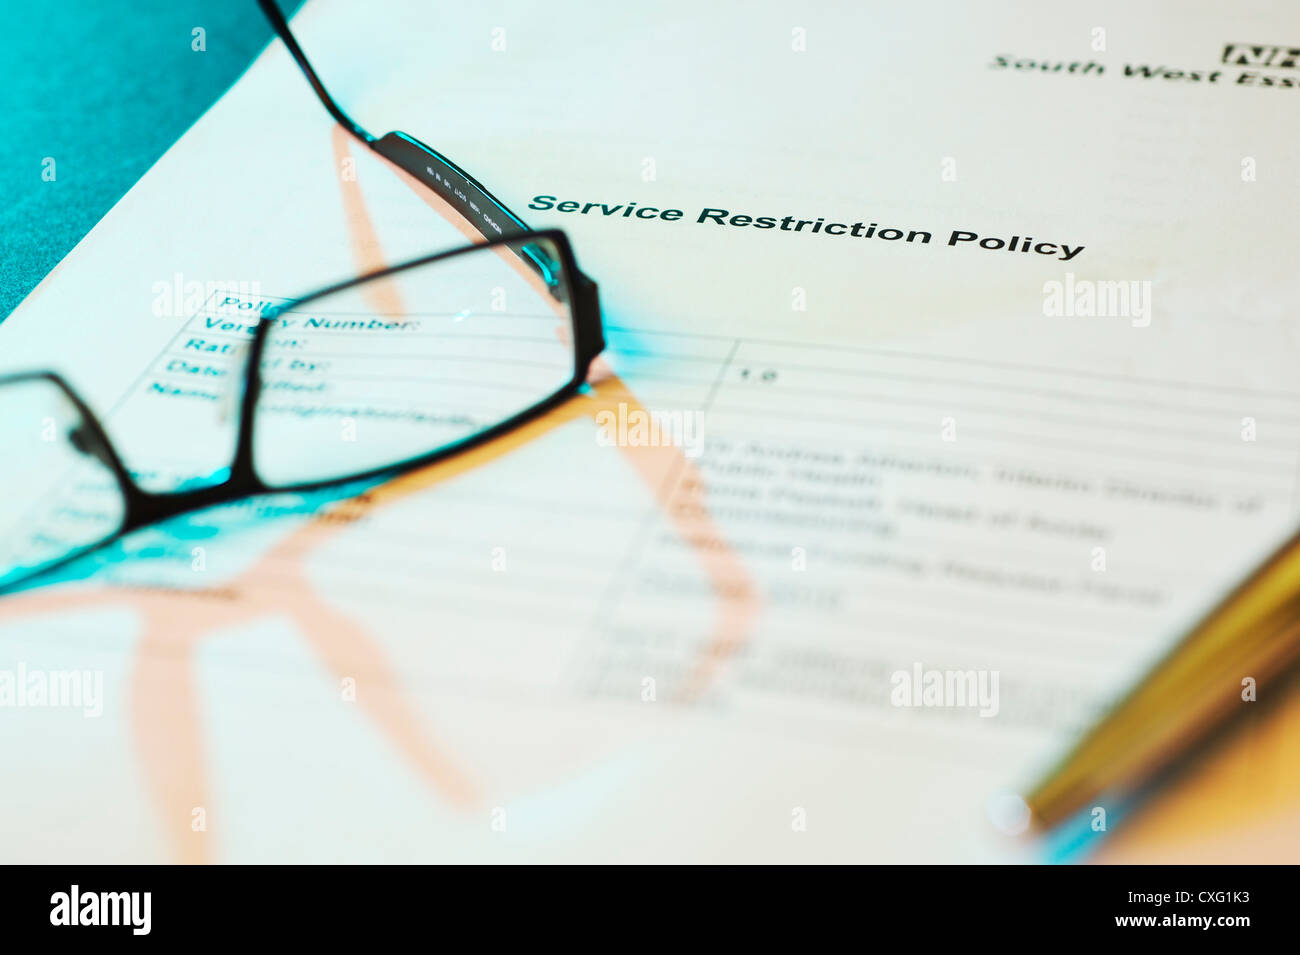 GP bicchieri posa su un NHS restrizione del servizio documento Criterio con illuminazione atmosferica e penna Foto Stock